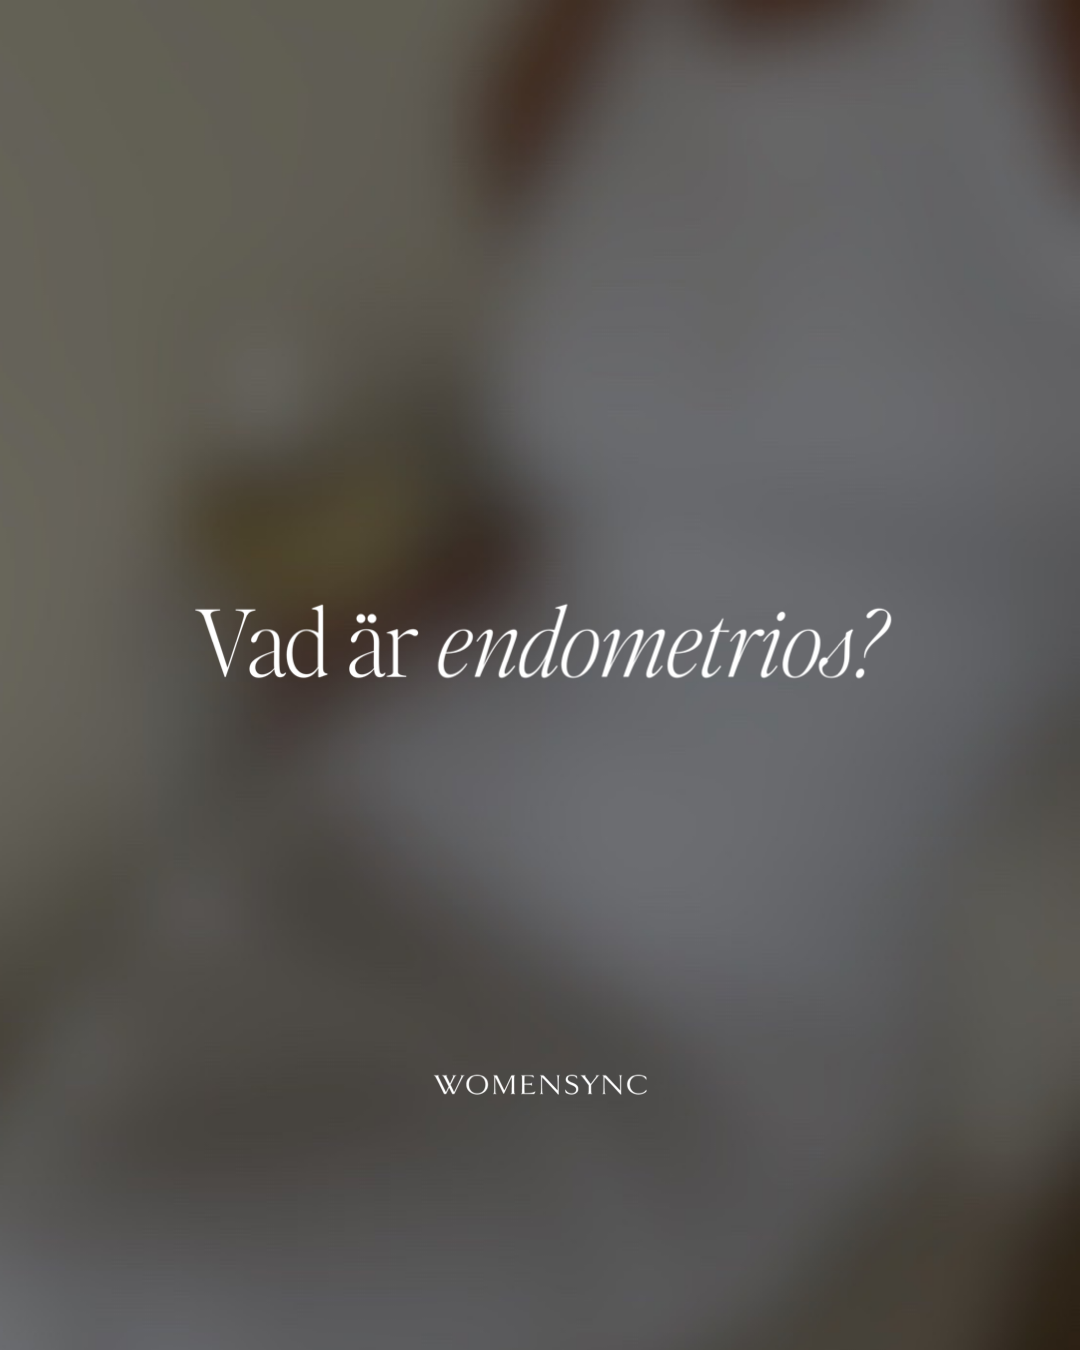 Vad är endometrios?